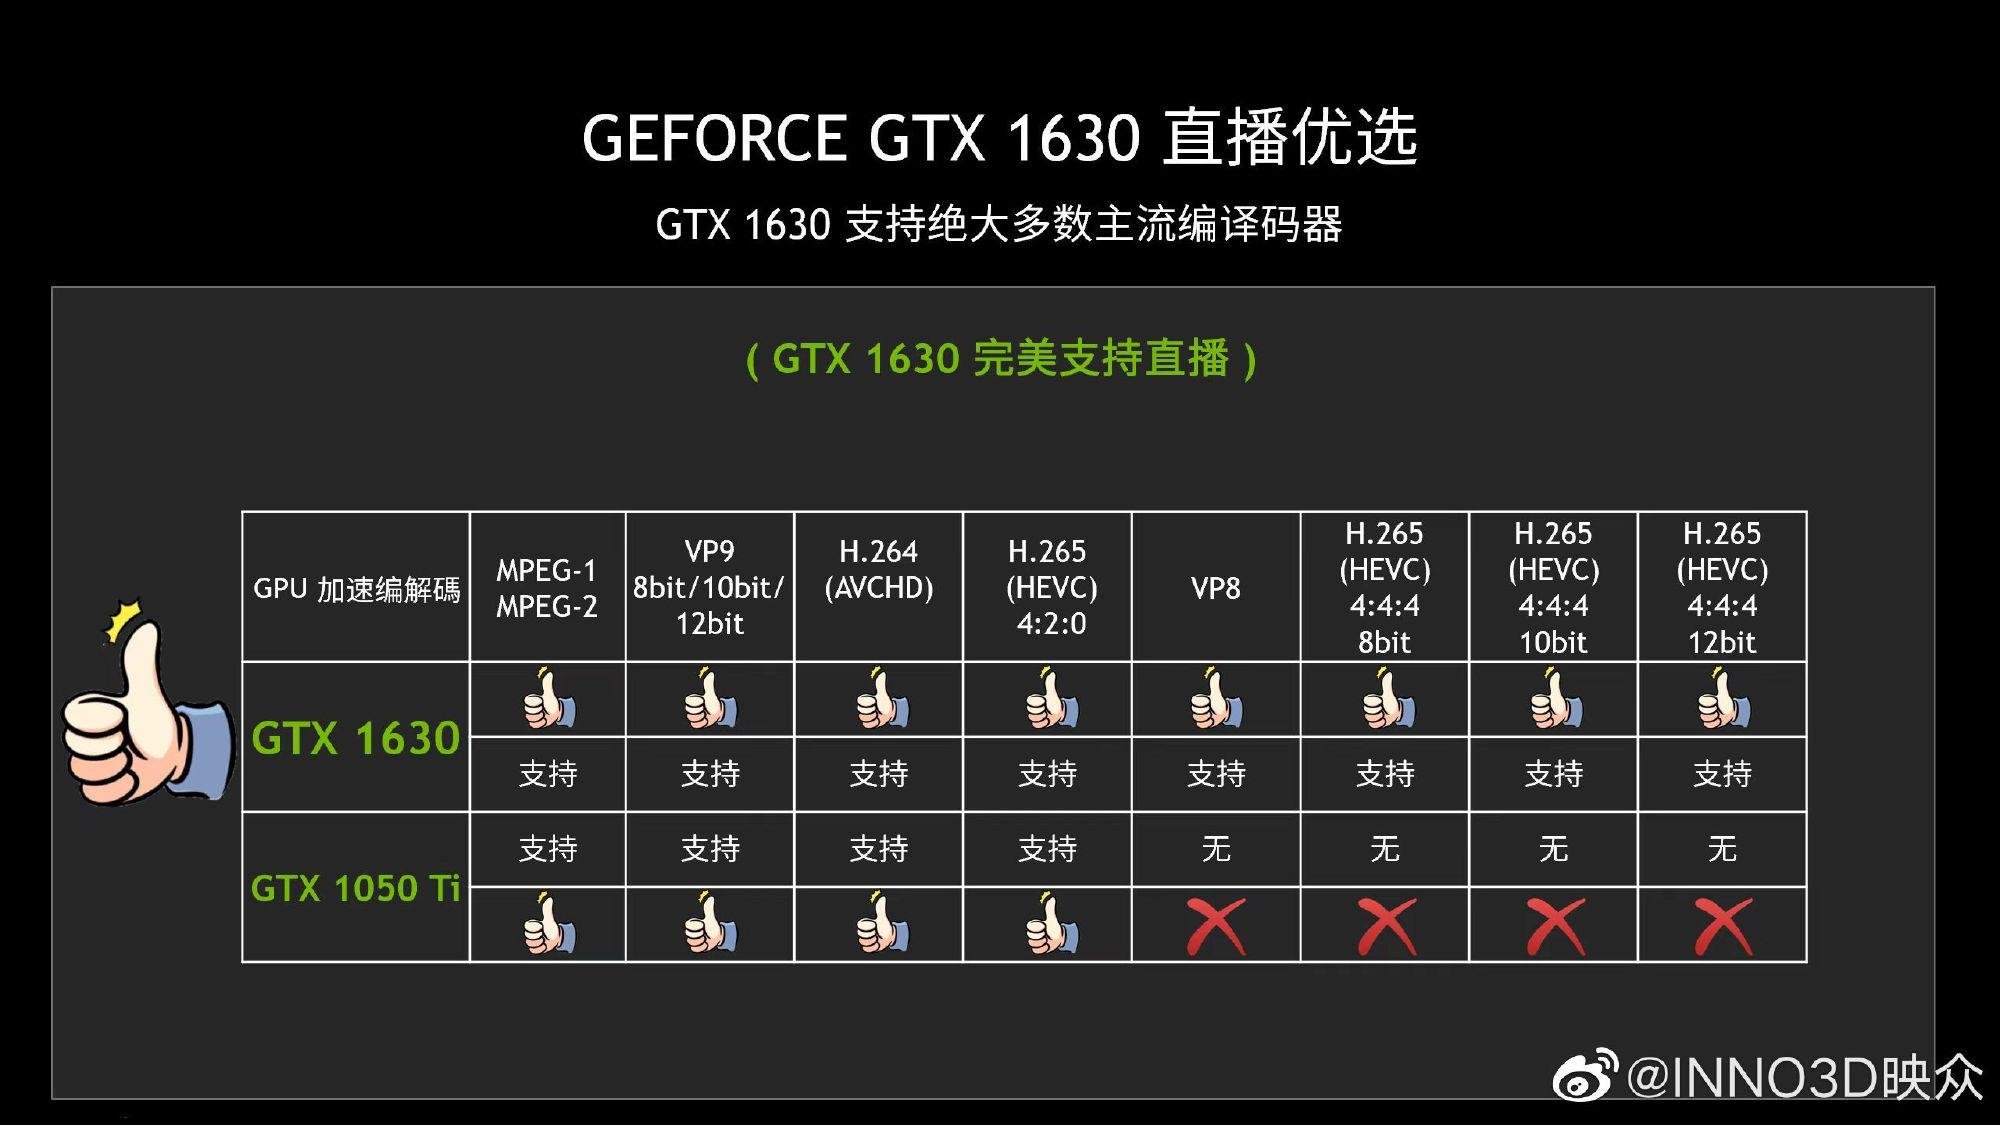 GTX 1630 não impressiona, mas conta com codecs de vídeo mais modernos que GTX 1050 Ti